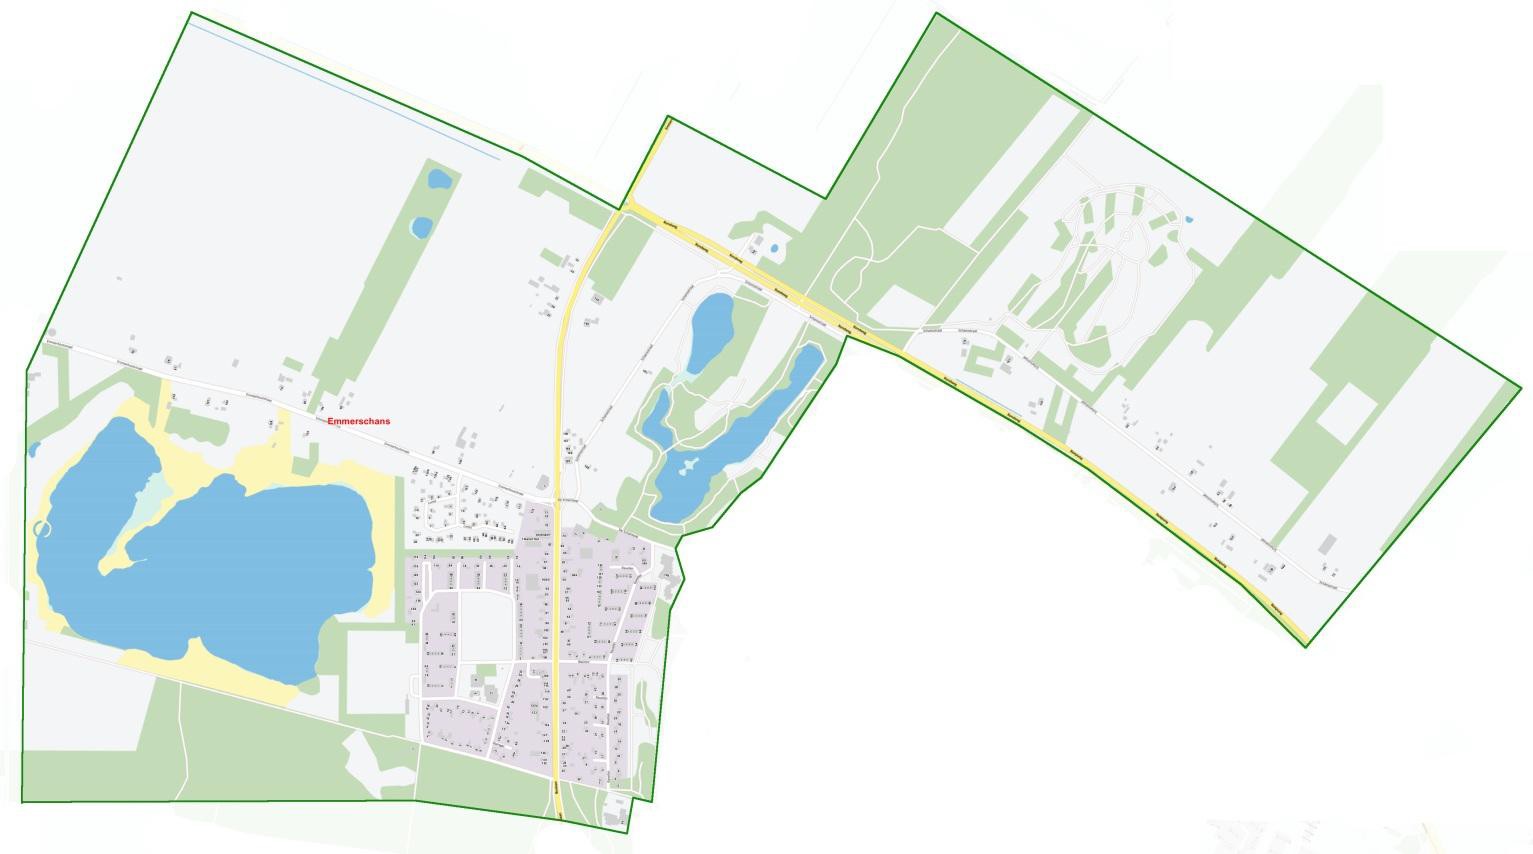 uitsnede topografische kaart grondgebied wijk Emmerschans. Woonwijk inclusief de historische Schans en landelijk gebied.